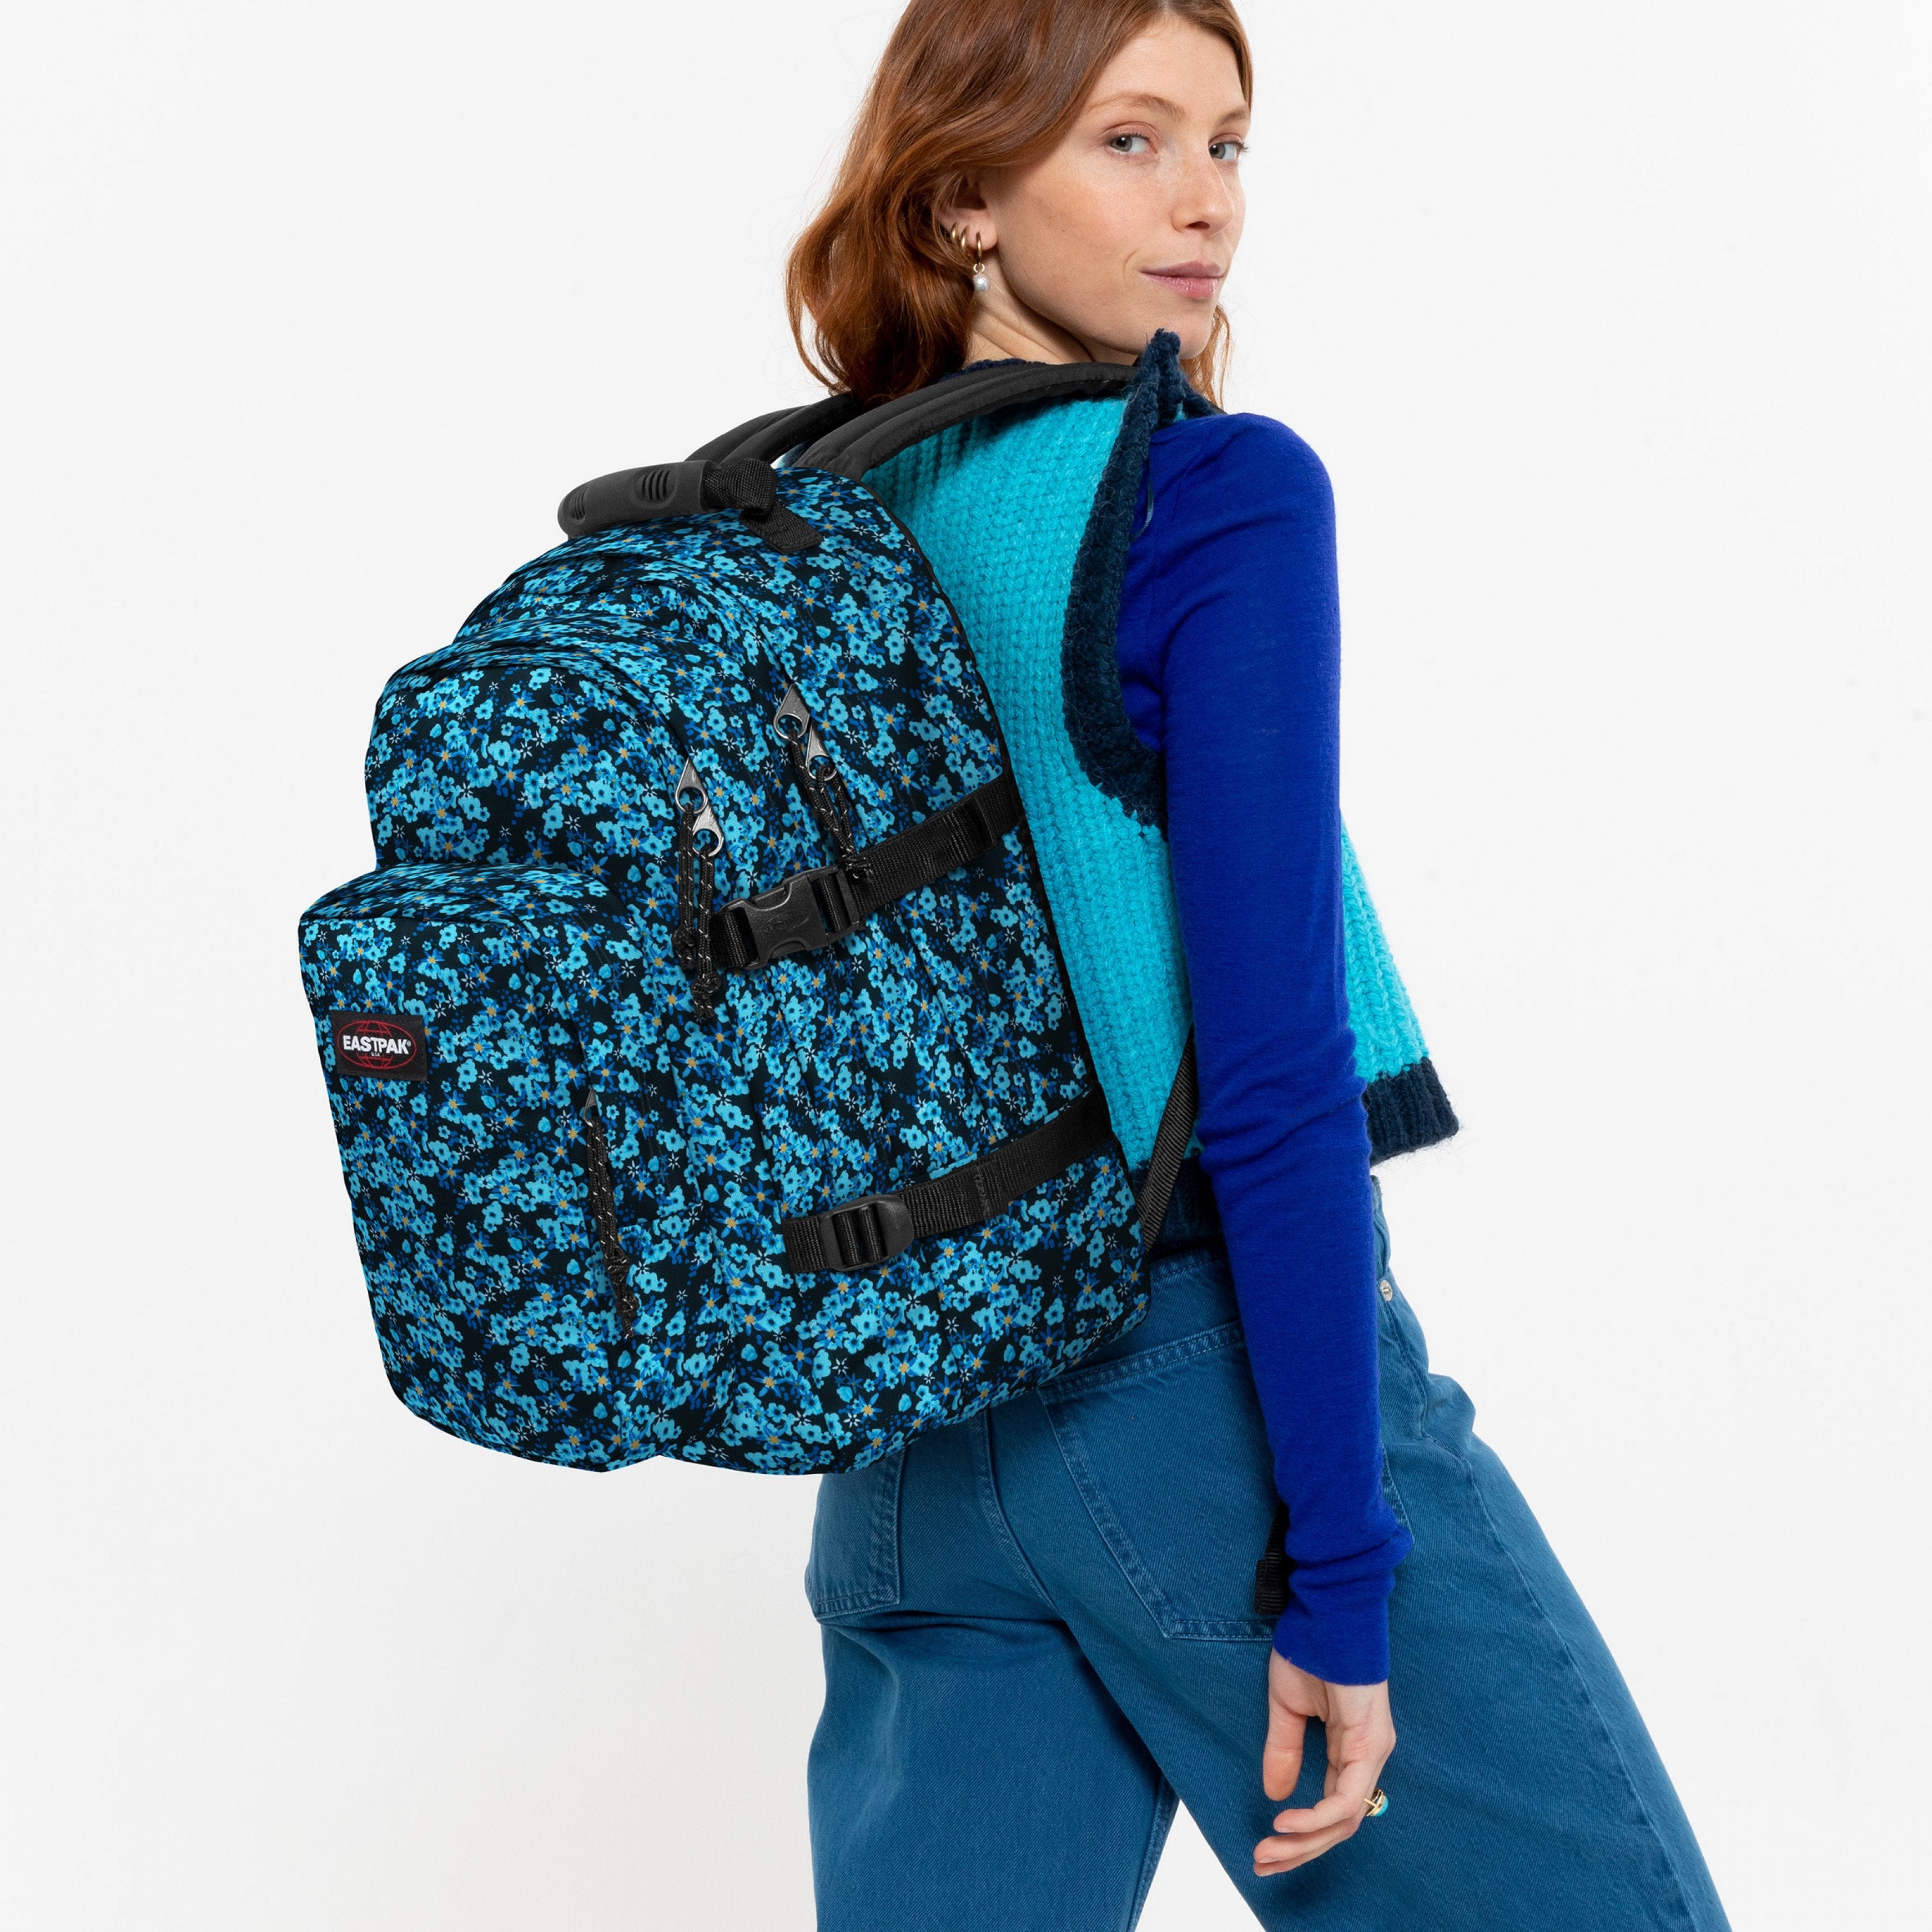 EASTPAK-Provider-Large Backpack with laptop compartment-Ditsy Black-EK000520U51